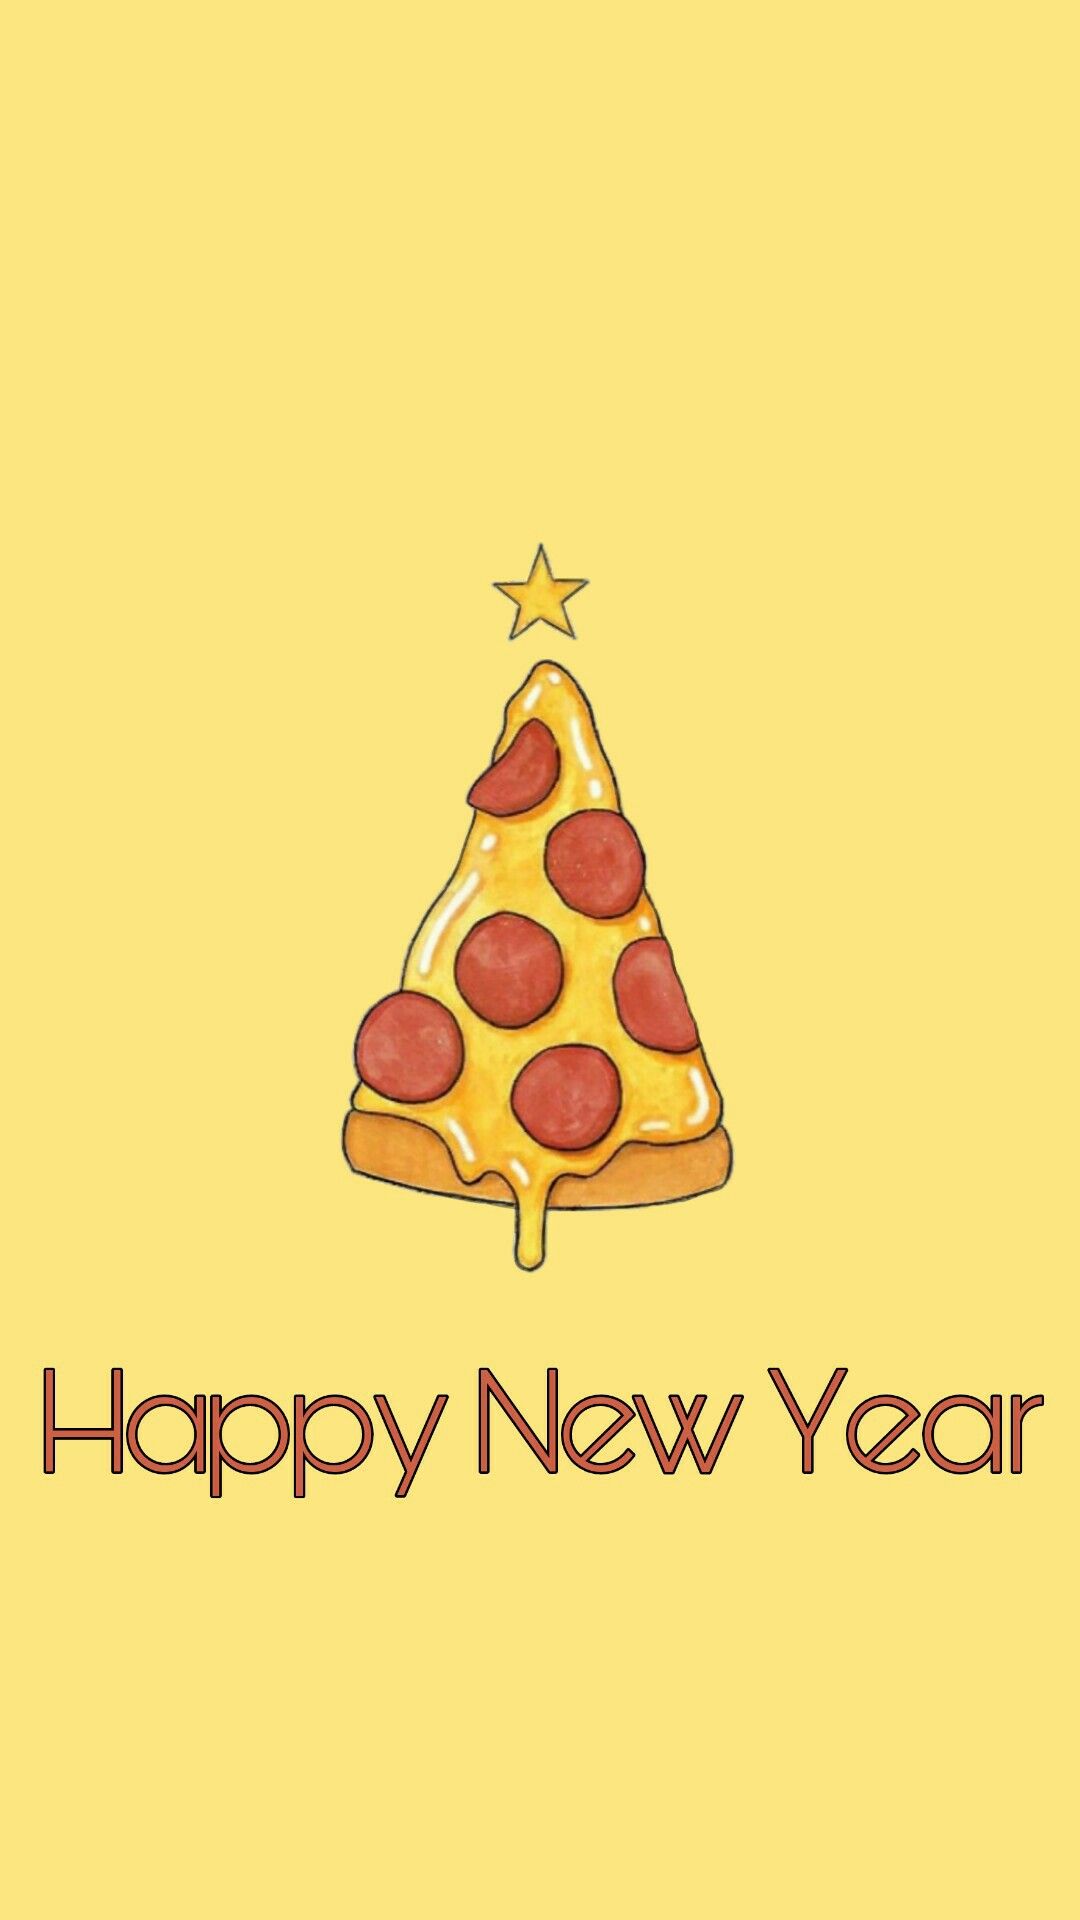 hình ảnh lát bánh pizza chúc mừng năm mới